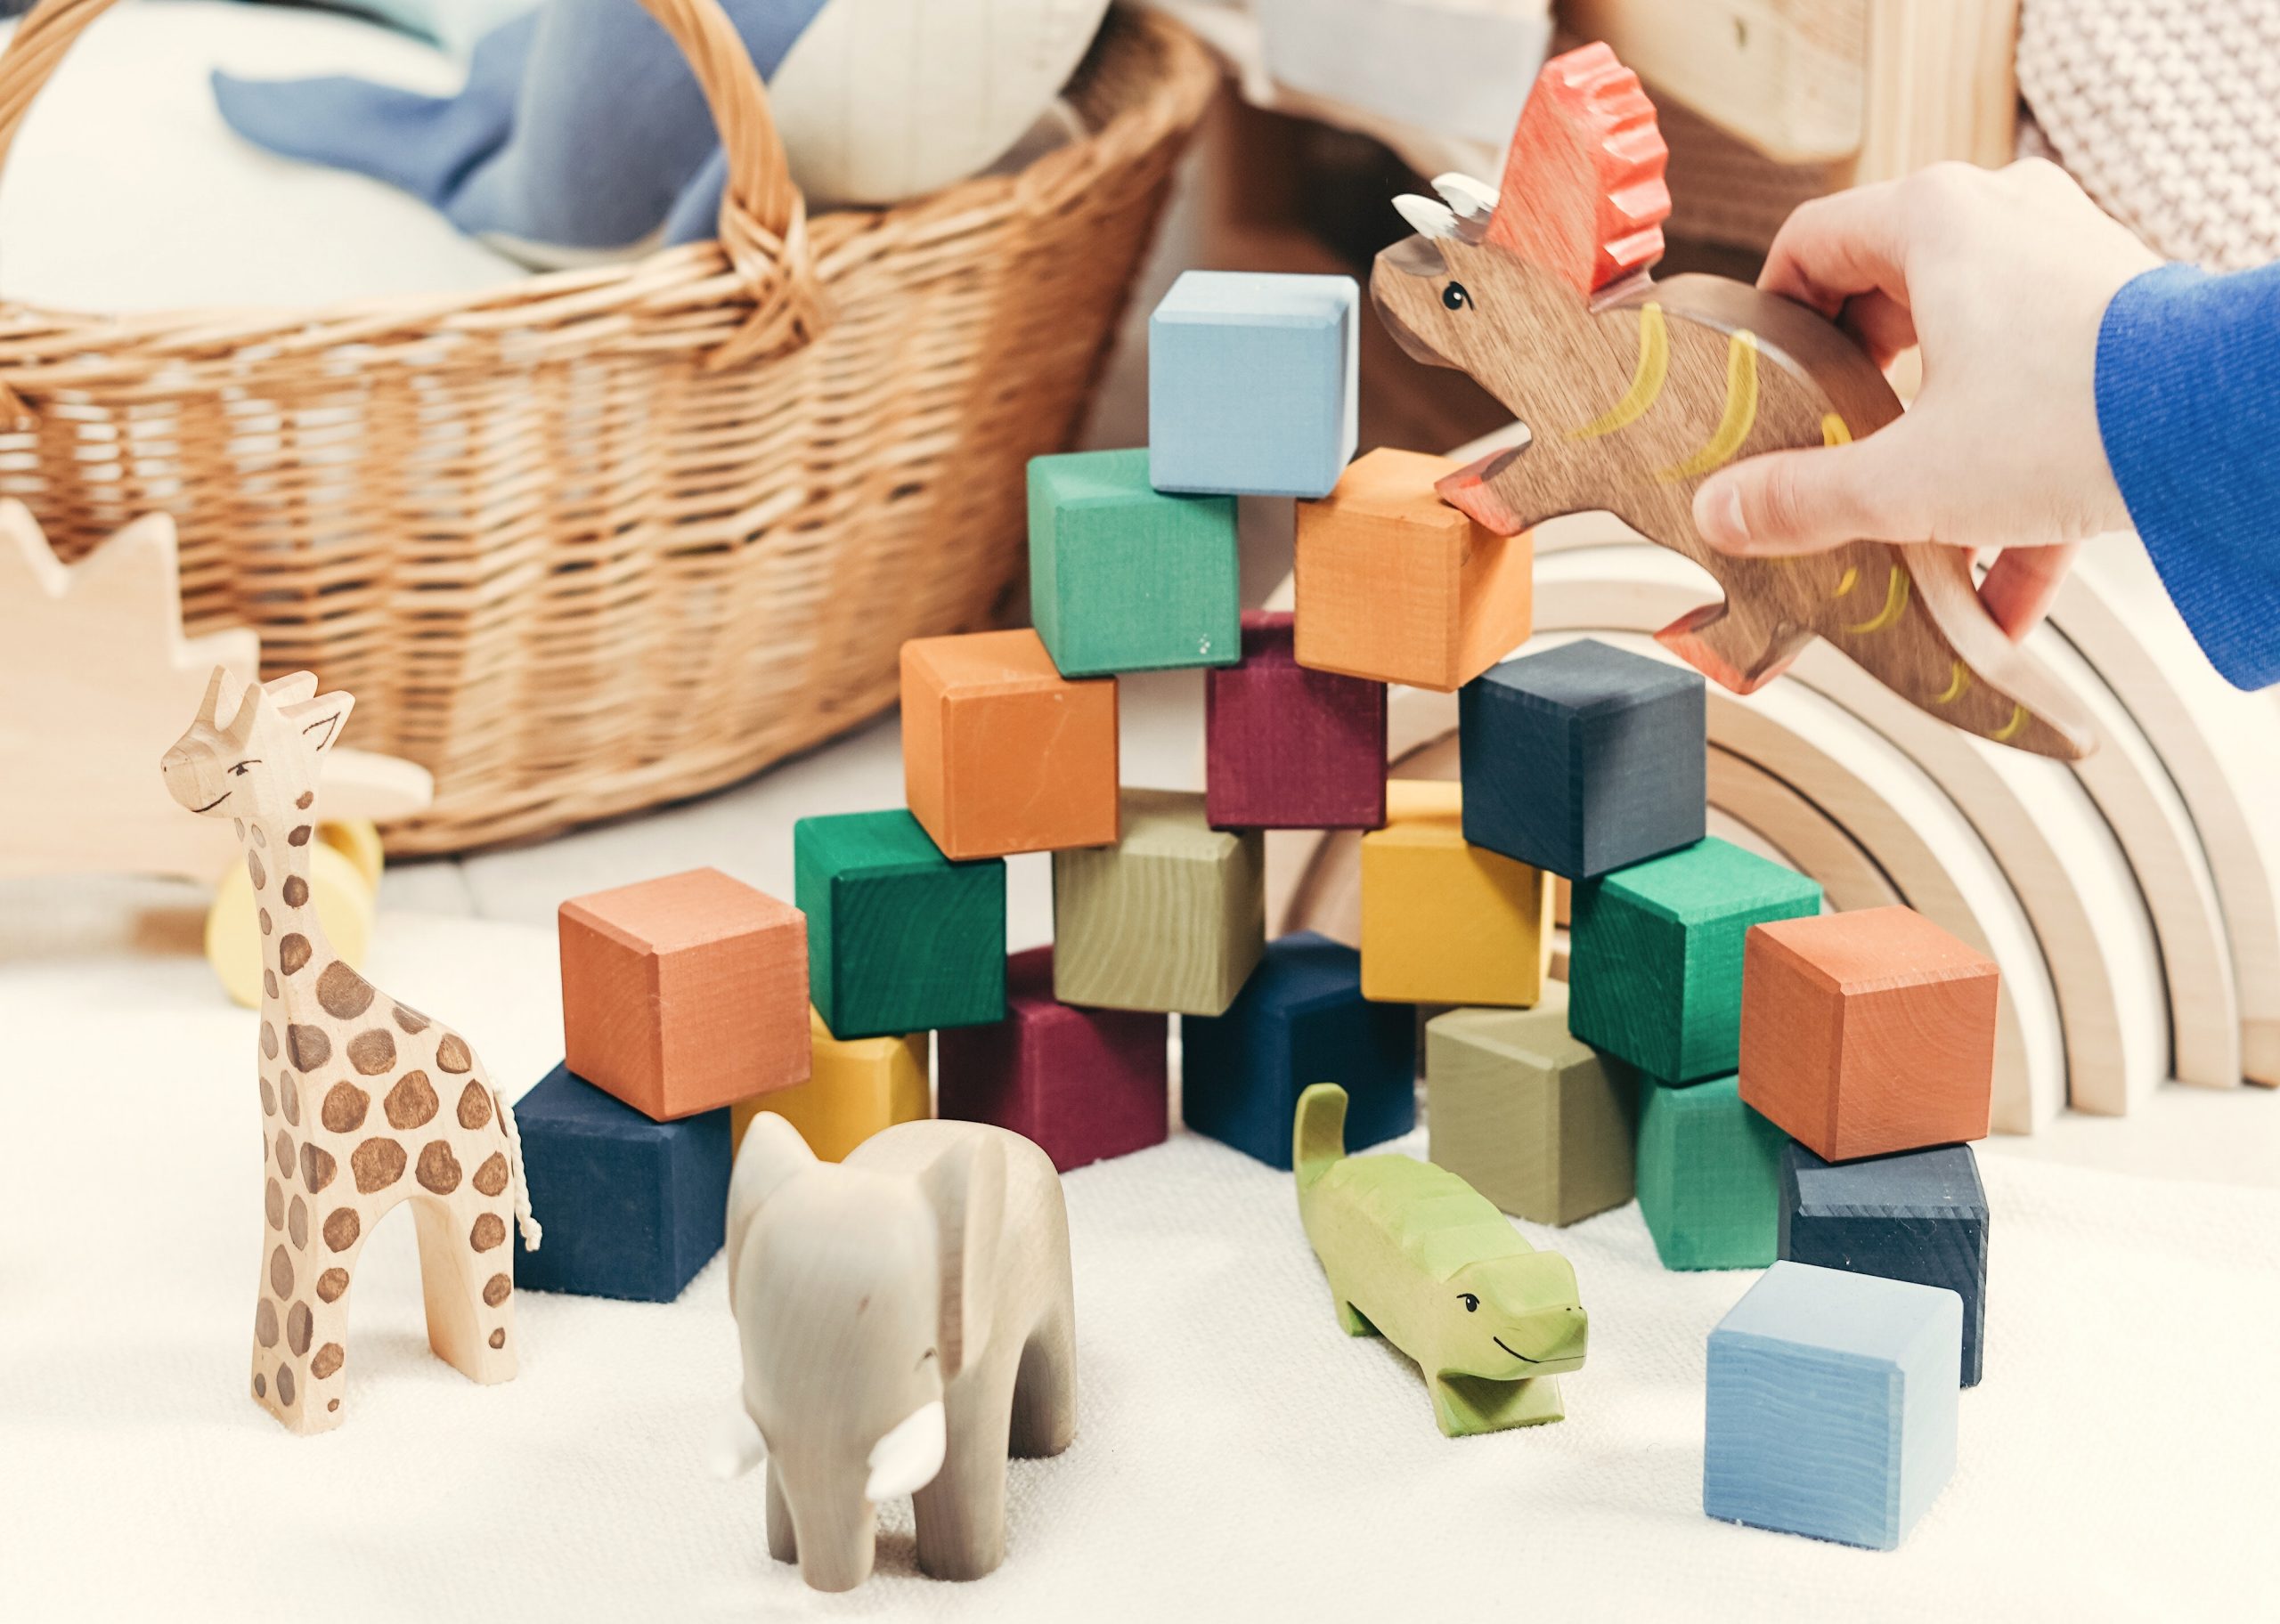 juguetes infantiles didacticos para bebes niños de madera regalos 3,4,5 años